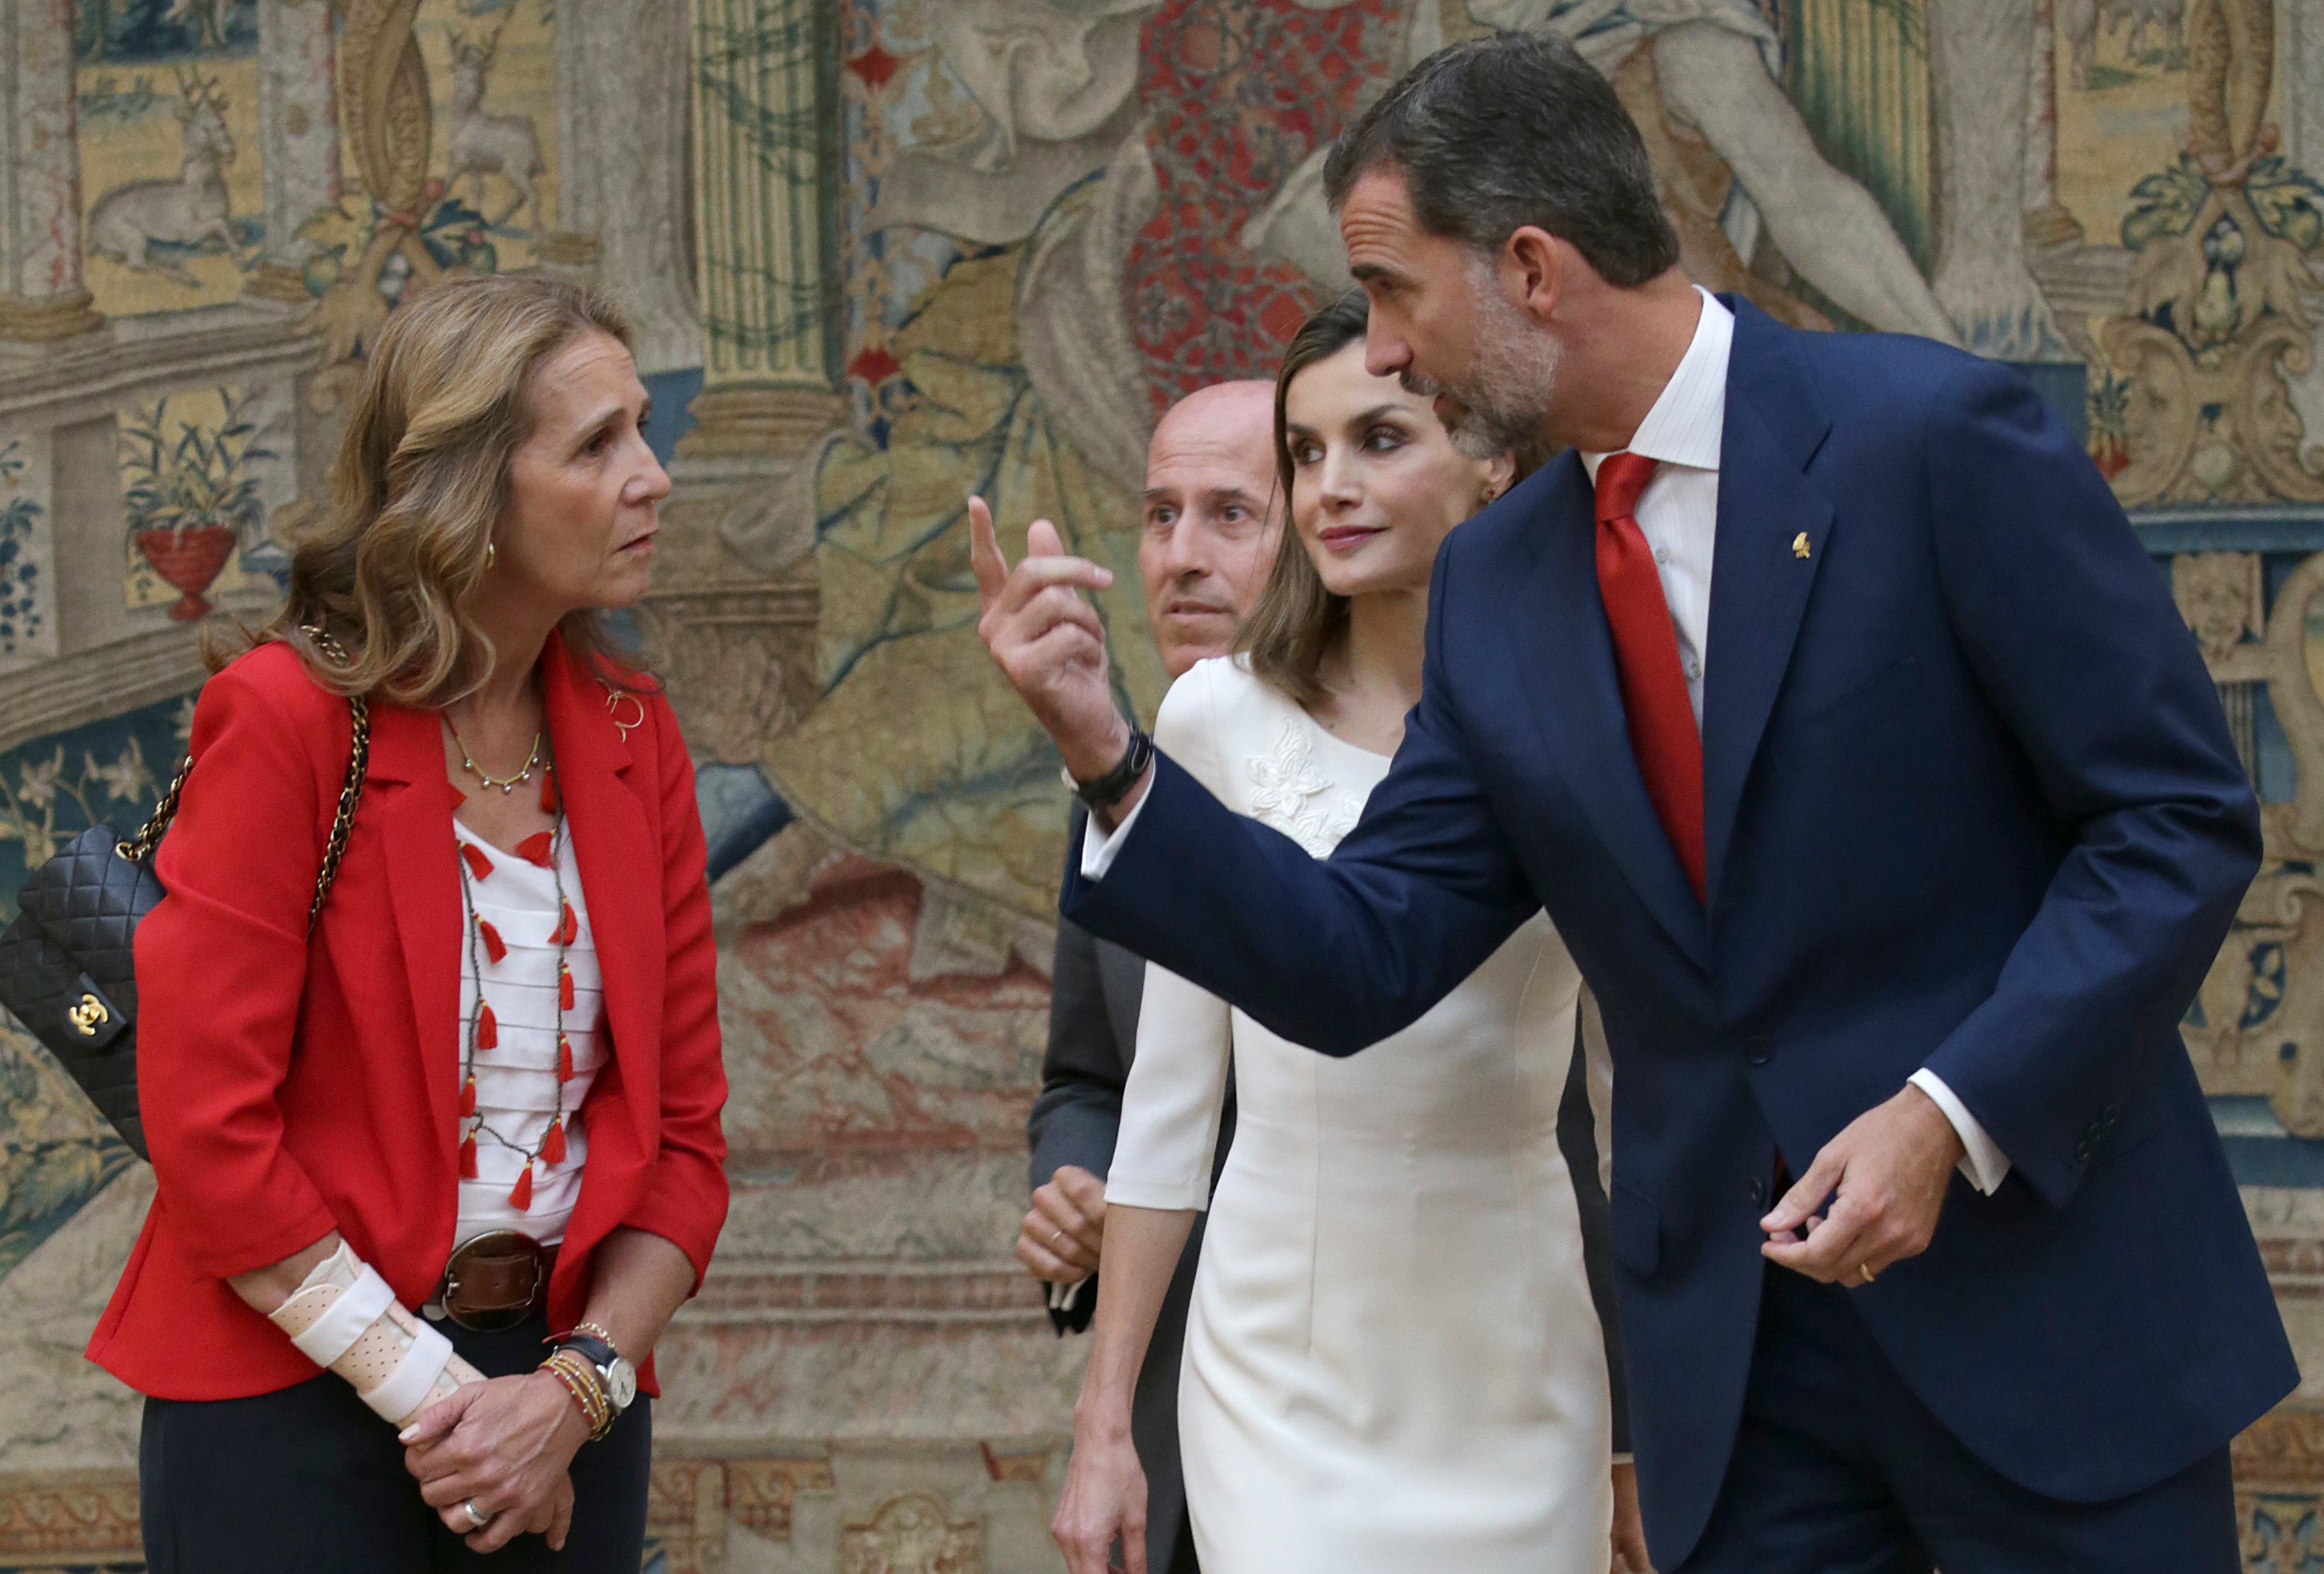 Peñafiel ensorra la monarquia espanyola: Felip és un usurpador de la Corona